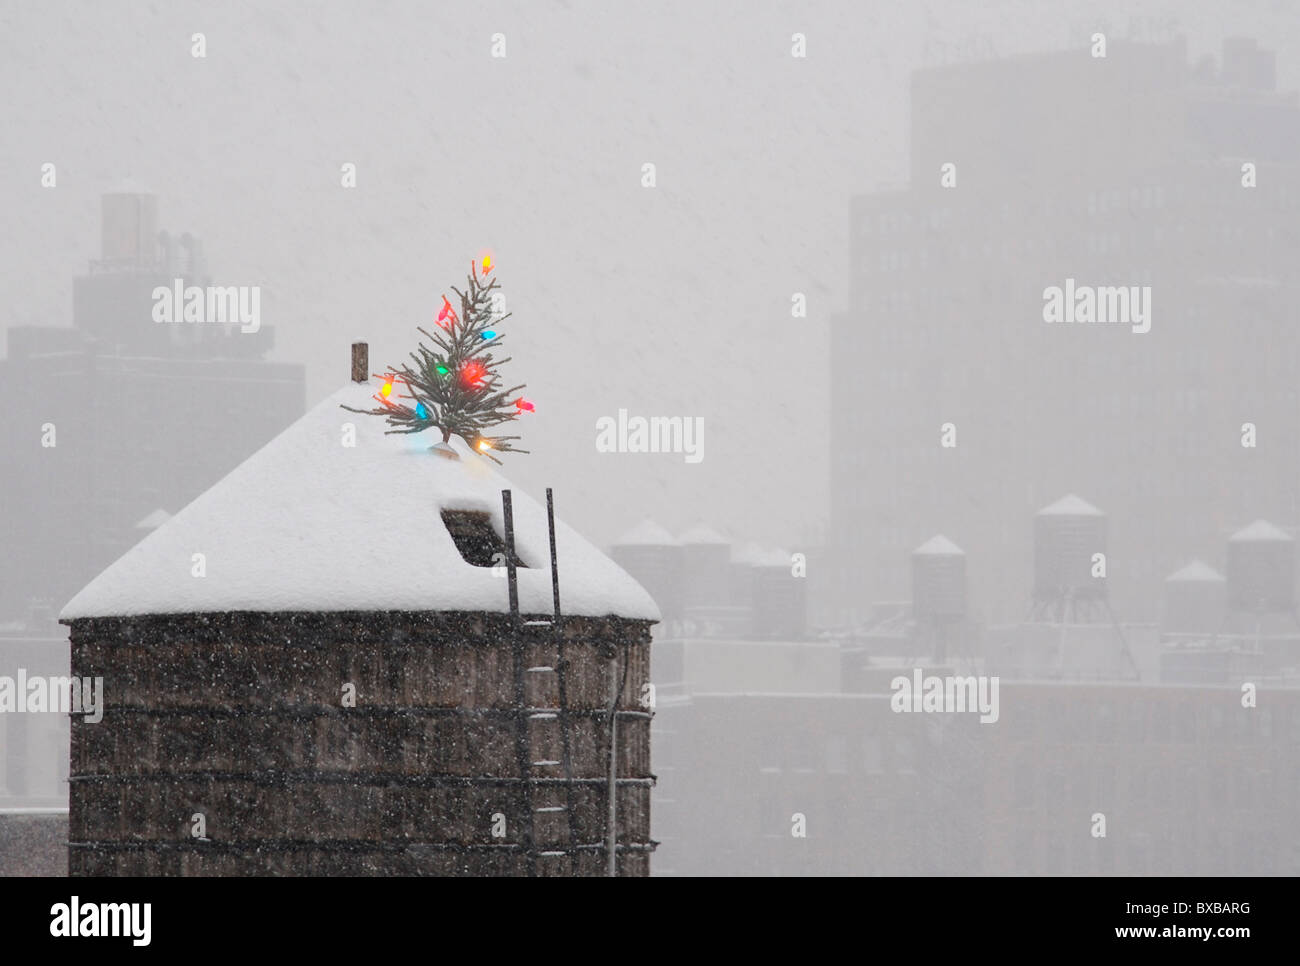 Albero di Natale sulla parte superiore della città di New York Water Tower in neve. Foto Stock